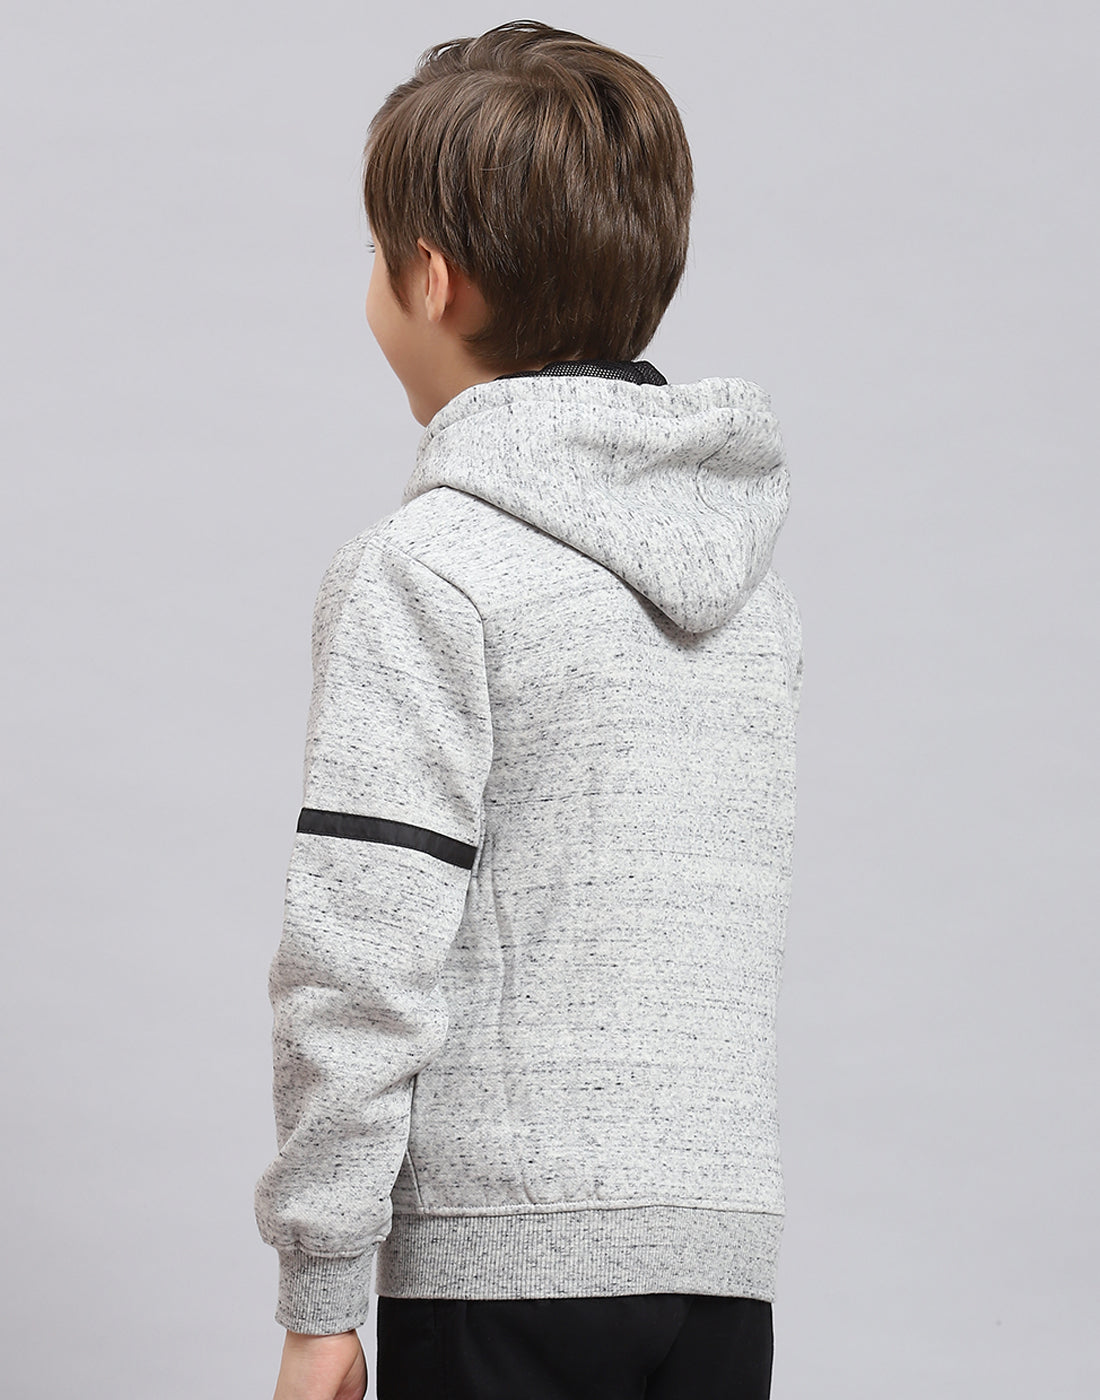 Boys Grey Melange Printed Hooded Full Sleeve Sweatshirt